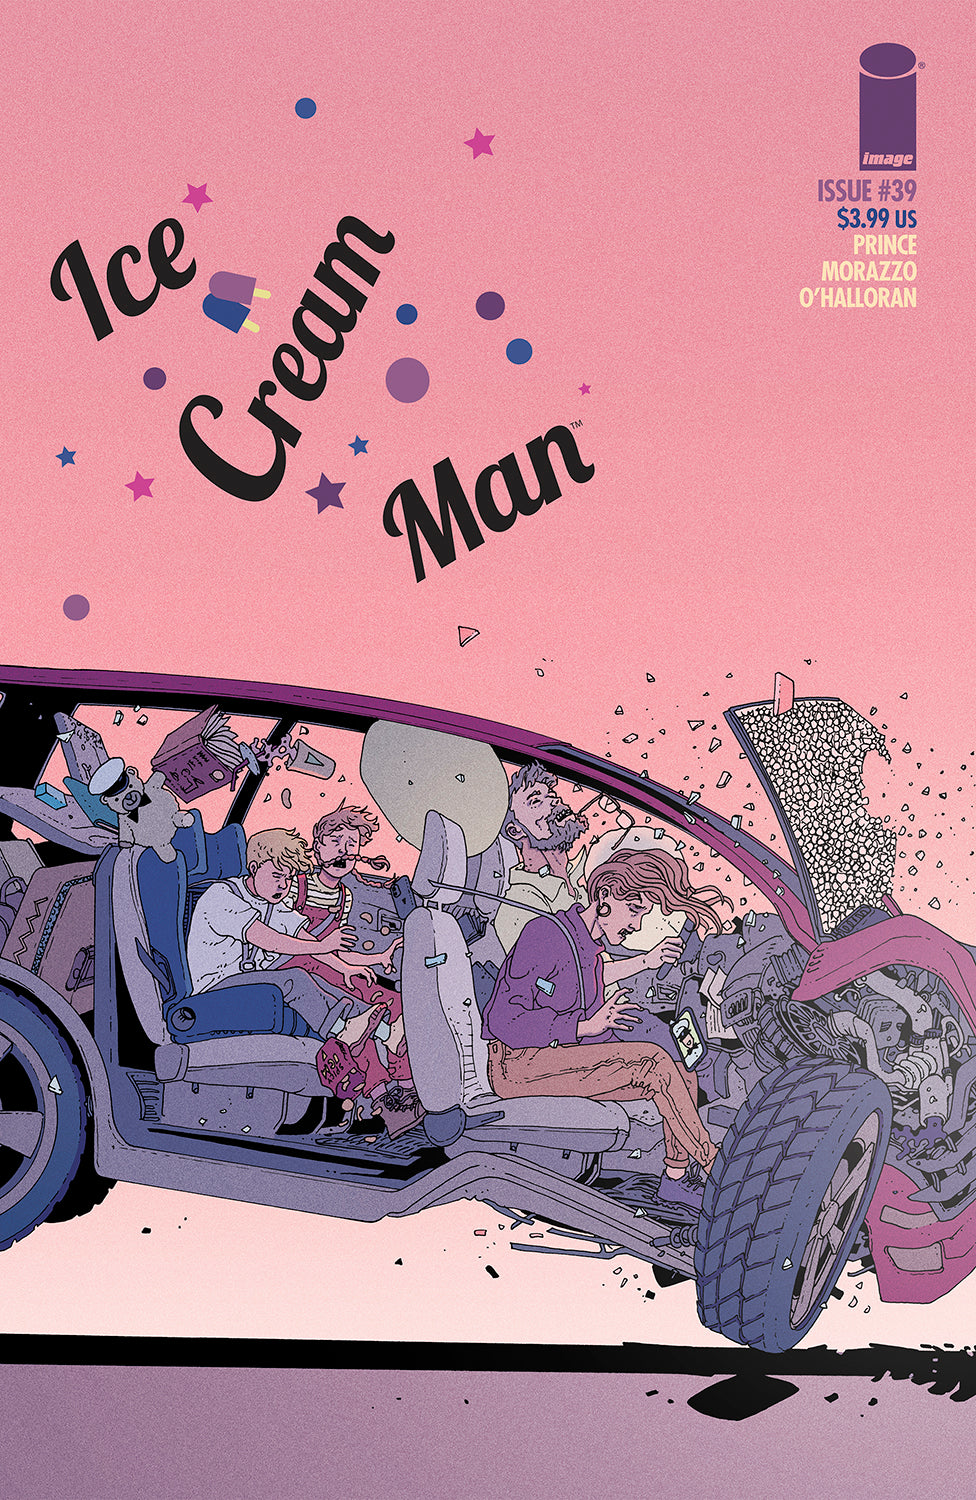 ICE CREAM MAN #39 COVER A MARTIN MORAZZO & CHRIS O’HALLORAN